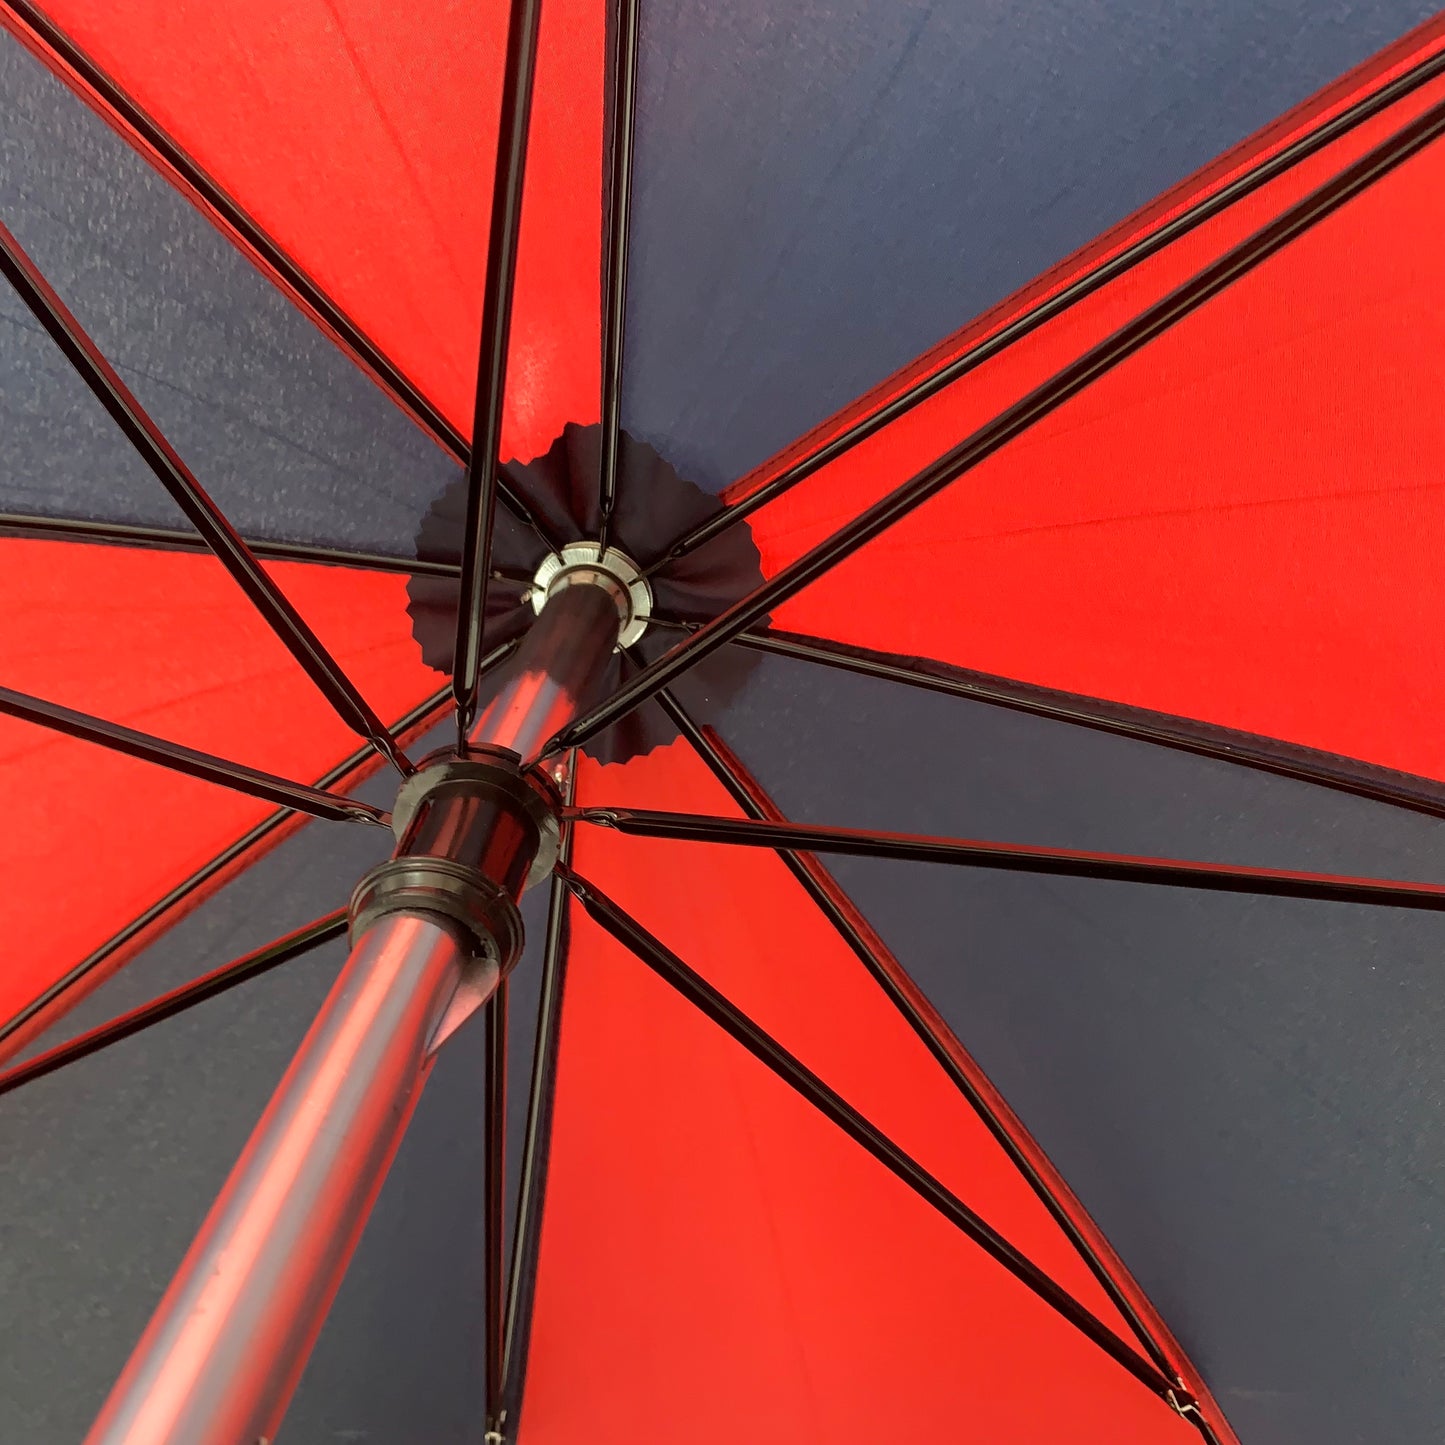 Seat Stick Umbrella | Superior Quality Seat Stick / Shooting Stick Umbrella | Umbrella Field Stick